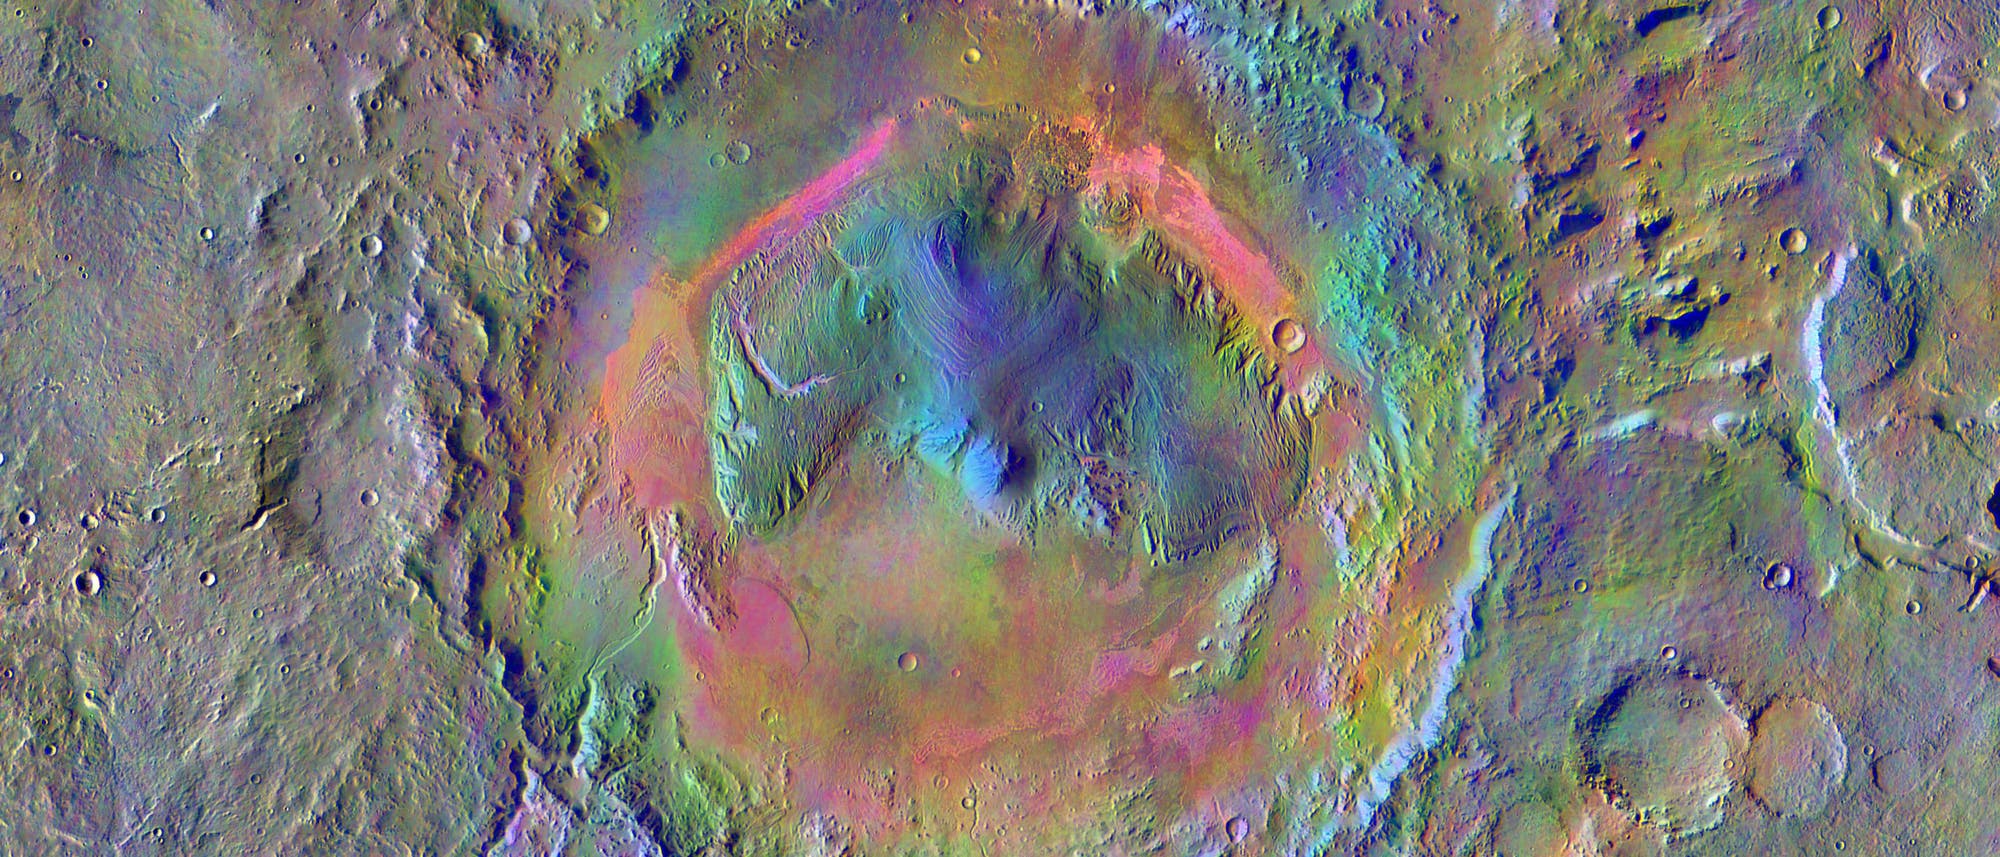 Der Krater Gale auf dem Mars. Der Marsrover Curiosity ist im Jahr 2012 in diesem Krater gelandet.